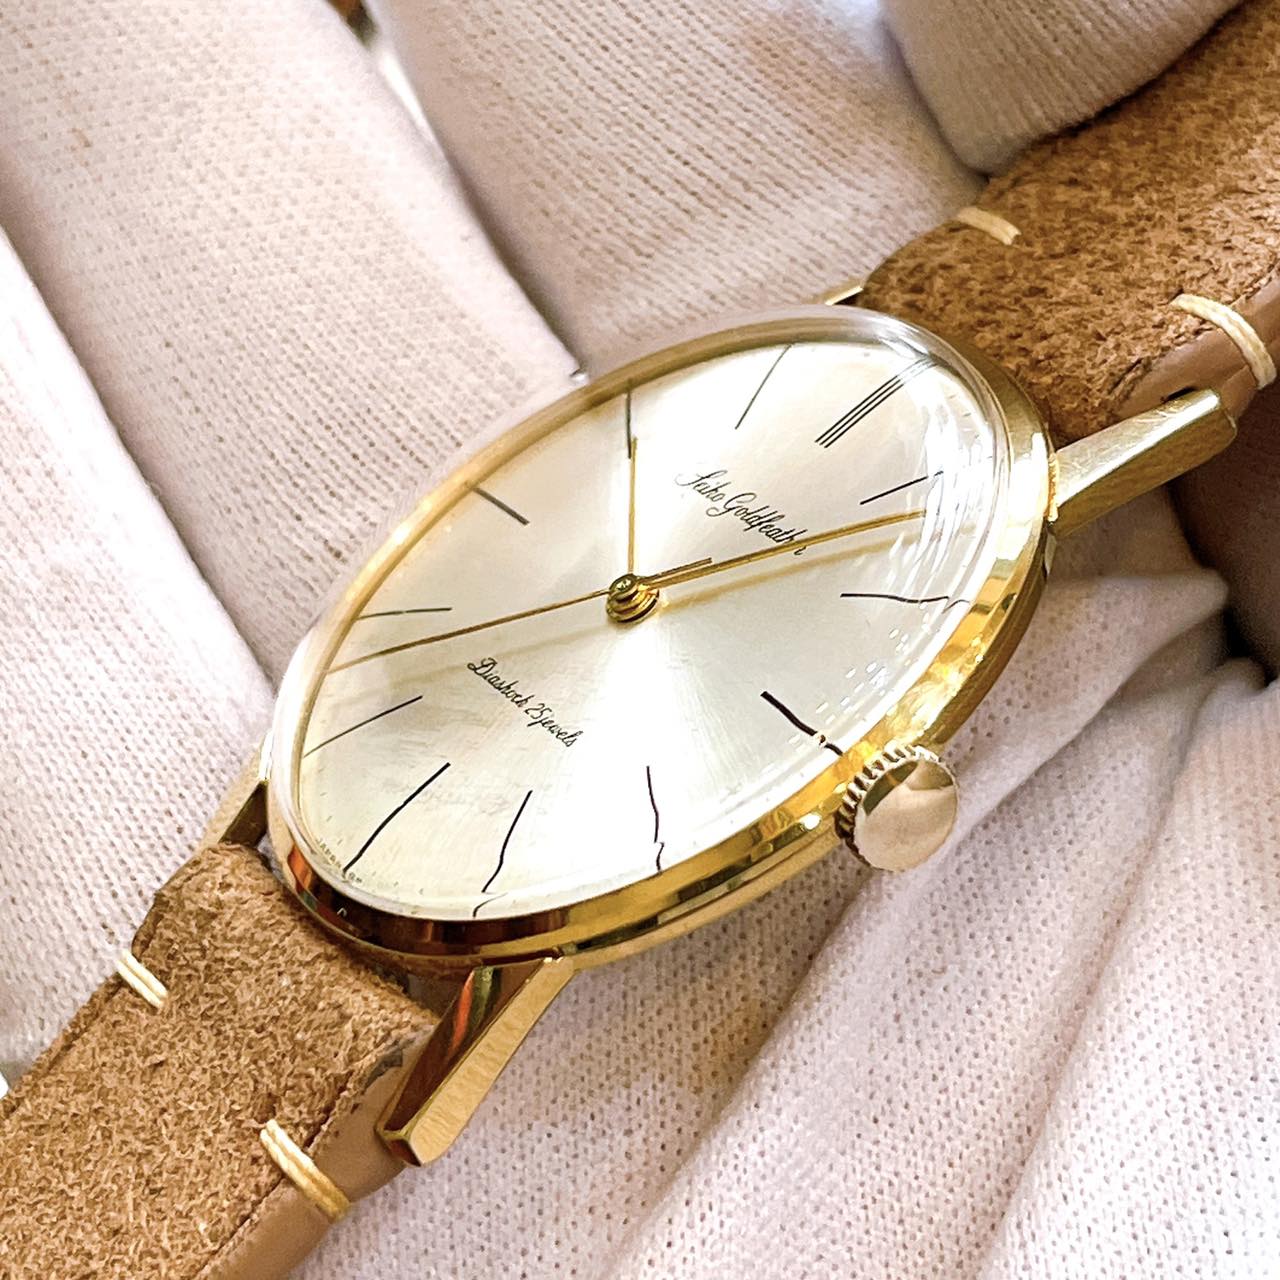 Đồng hồ cổ Seiko Goldfeather lên dây siêu mỏng bọc vàng 14k goldfilled chính hãng Nhật bản